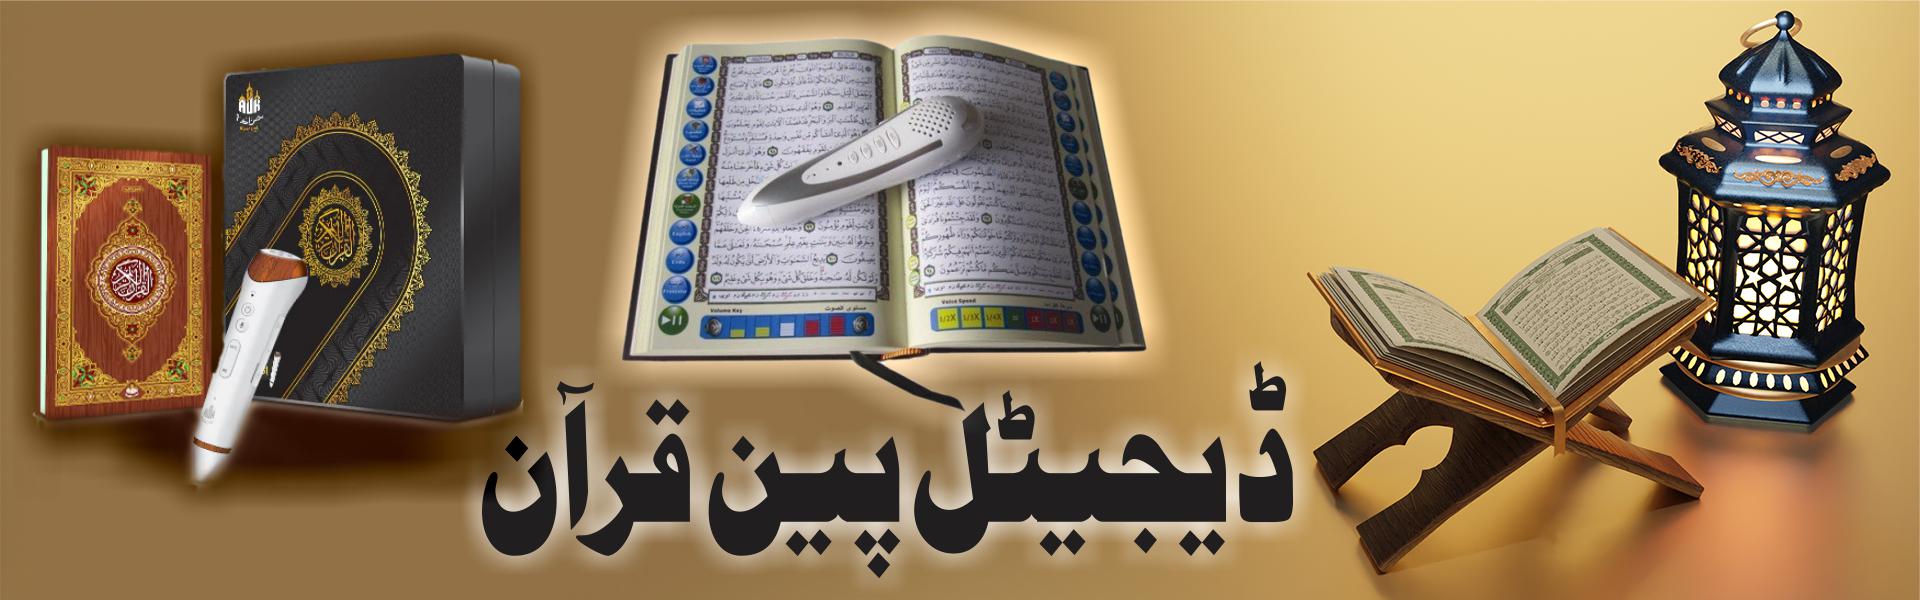 13-Digital Pen Quran